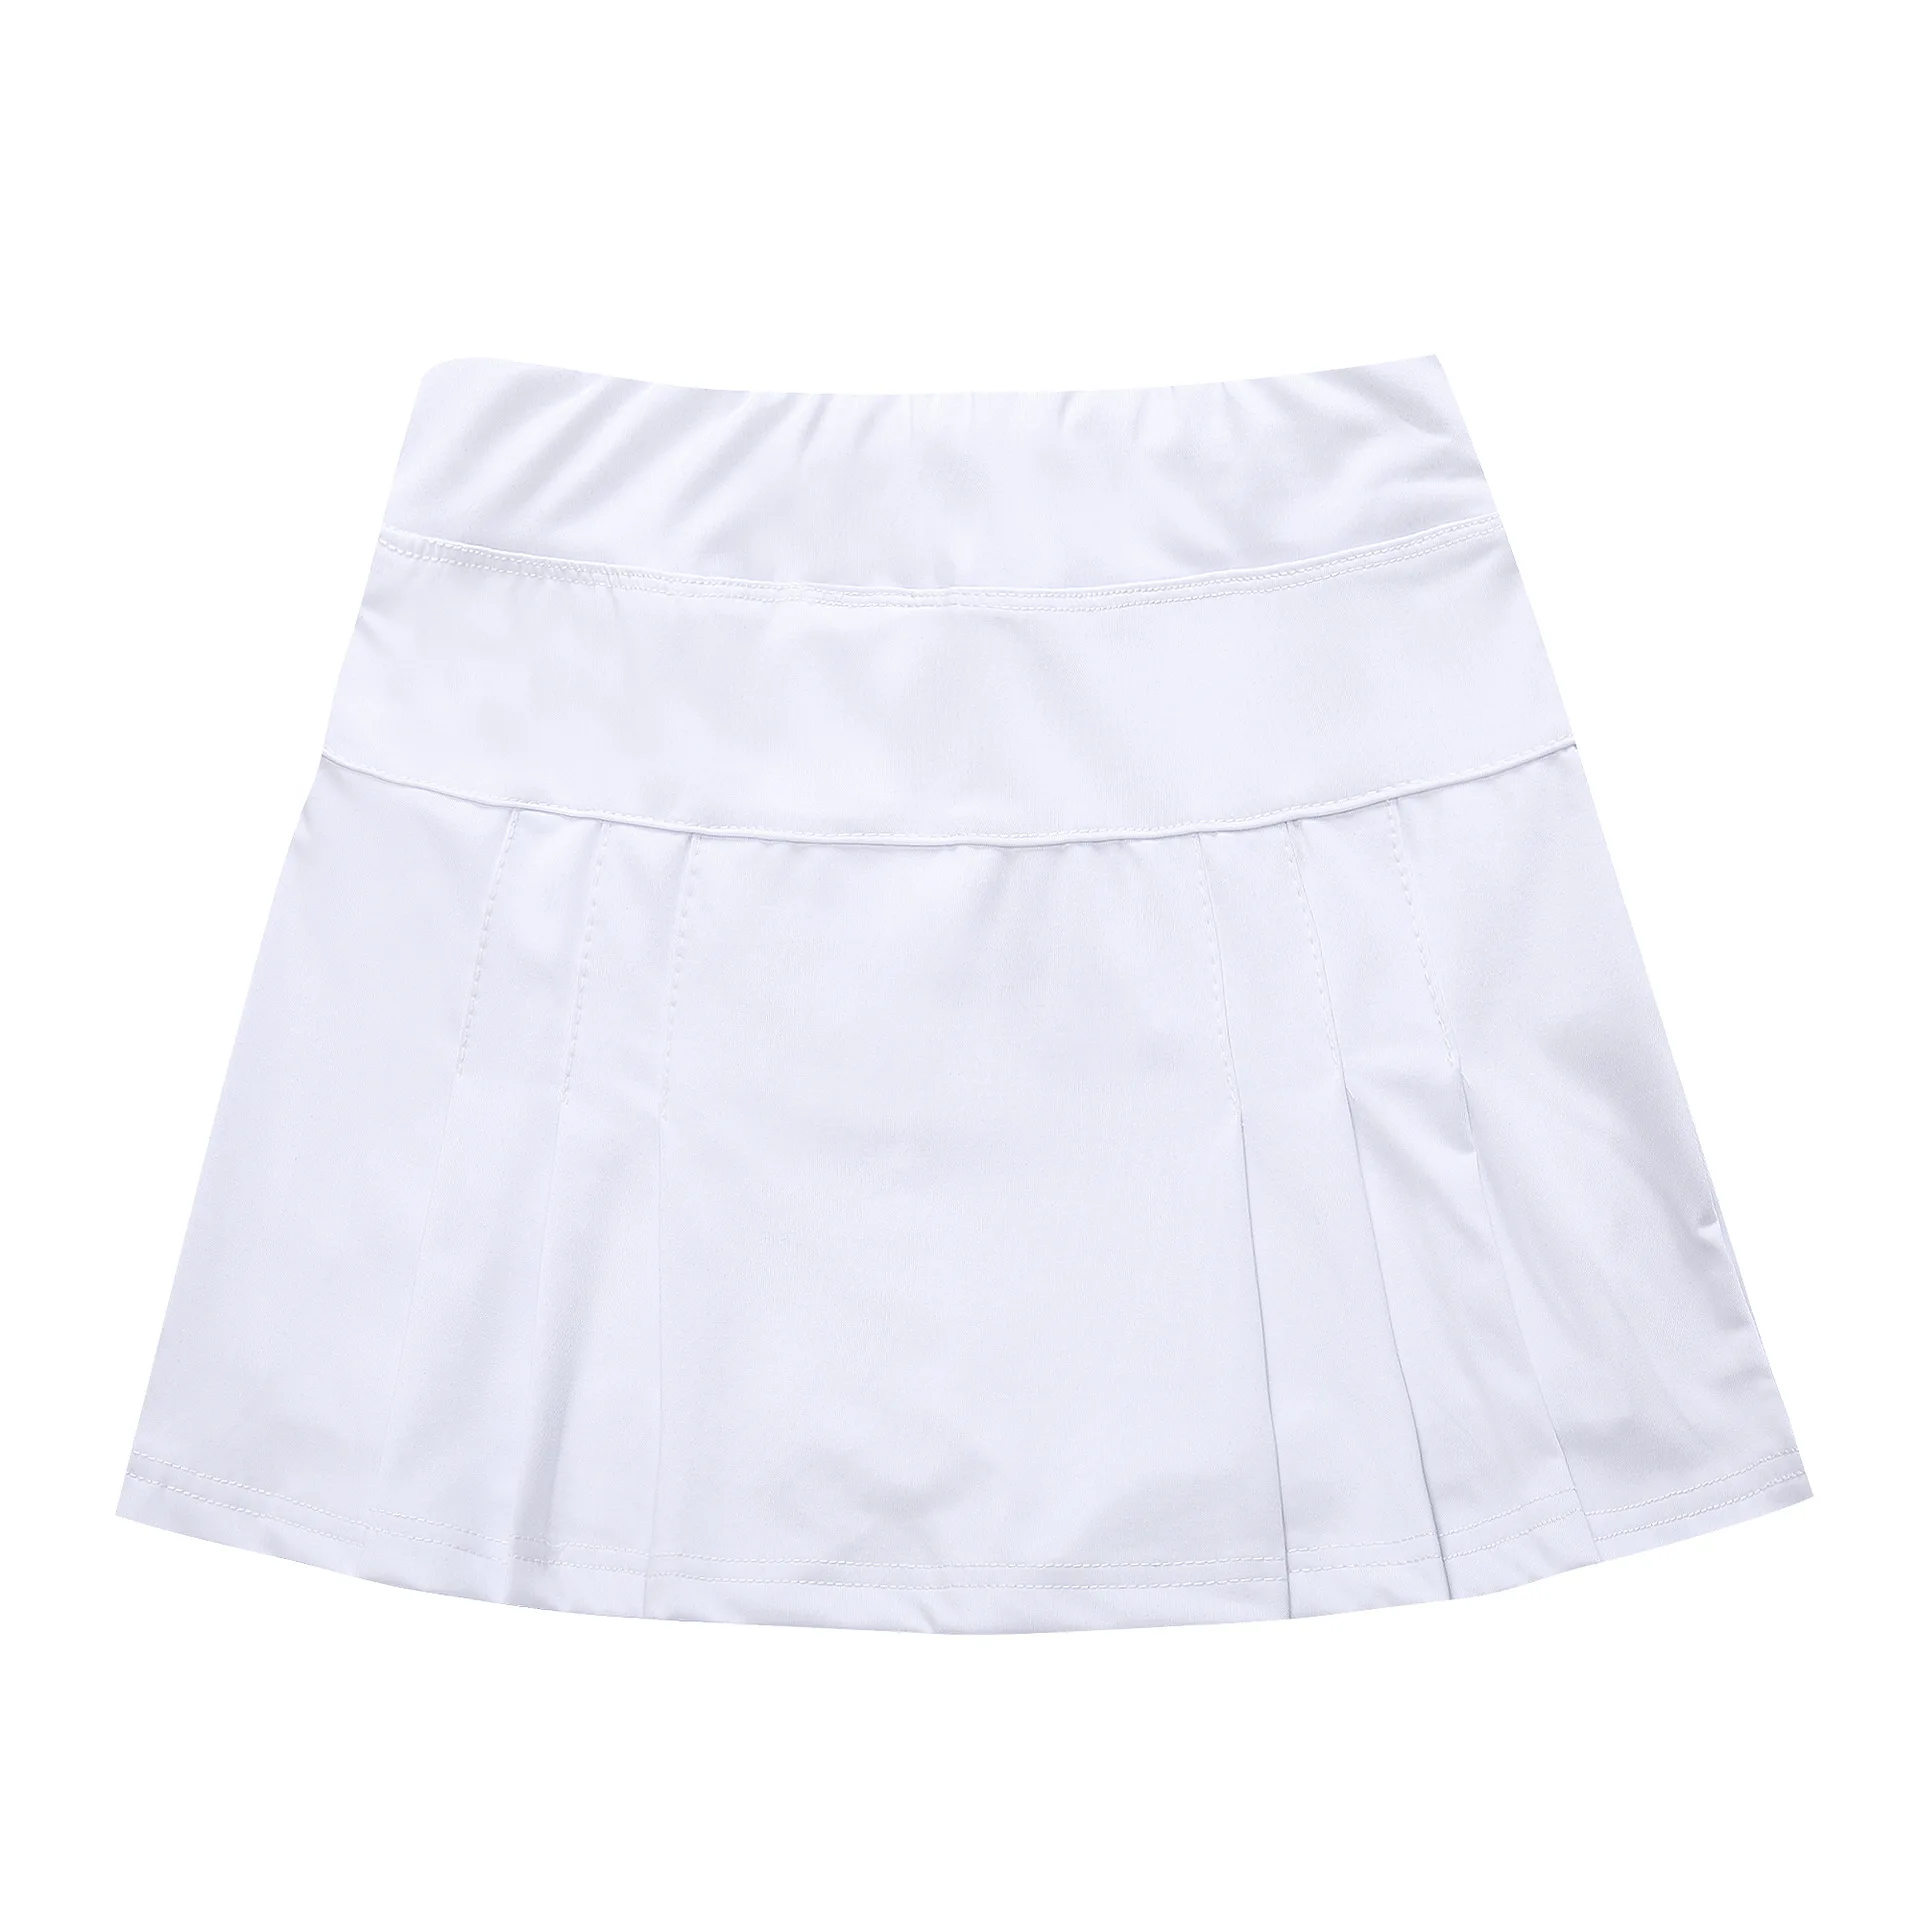 Женская теннисная юбка, с карманами, одноцветная, дышащая, быстросохнущая, юбка-шорты, Спортивная, Tenis Jupe Culotte, юбка для гольфа, пляжный волейбол, спортивная одежда - Цвет: Белый